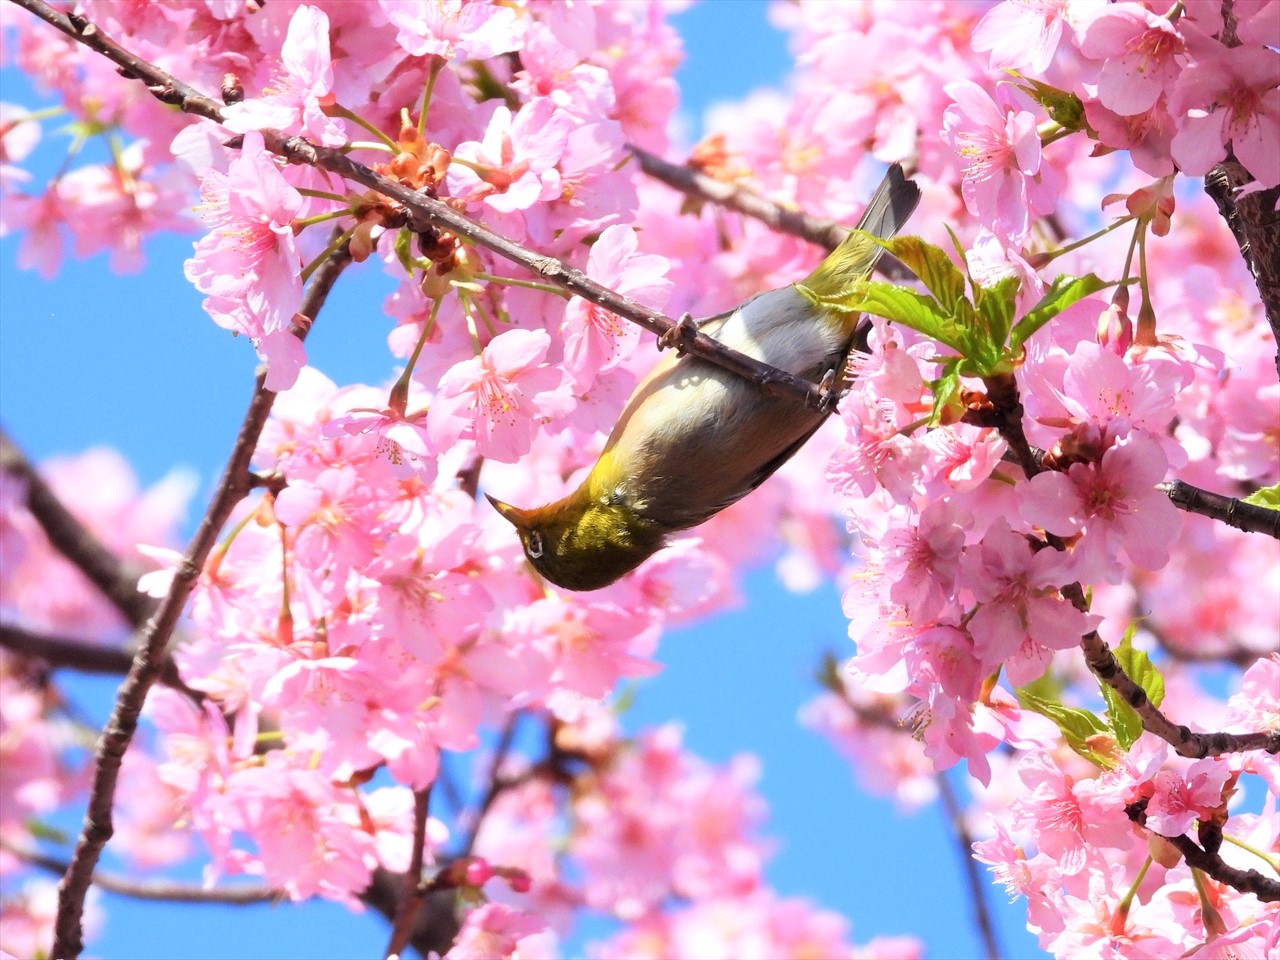 DSCN5259 (2)緋寒桜にメジロ２０２２年３月１５日AM９：５８